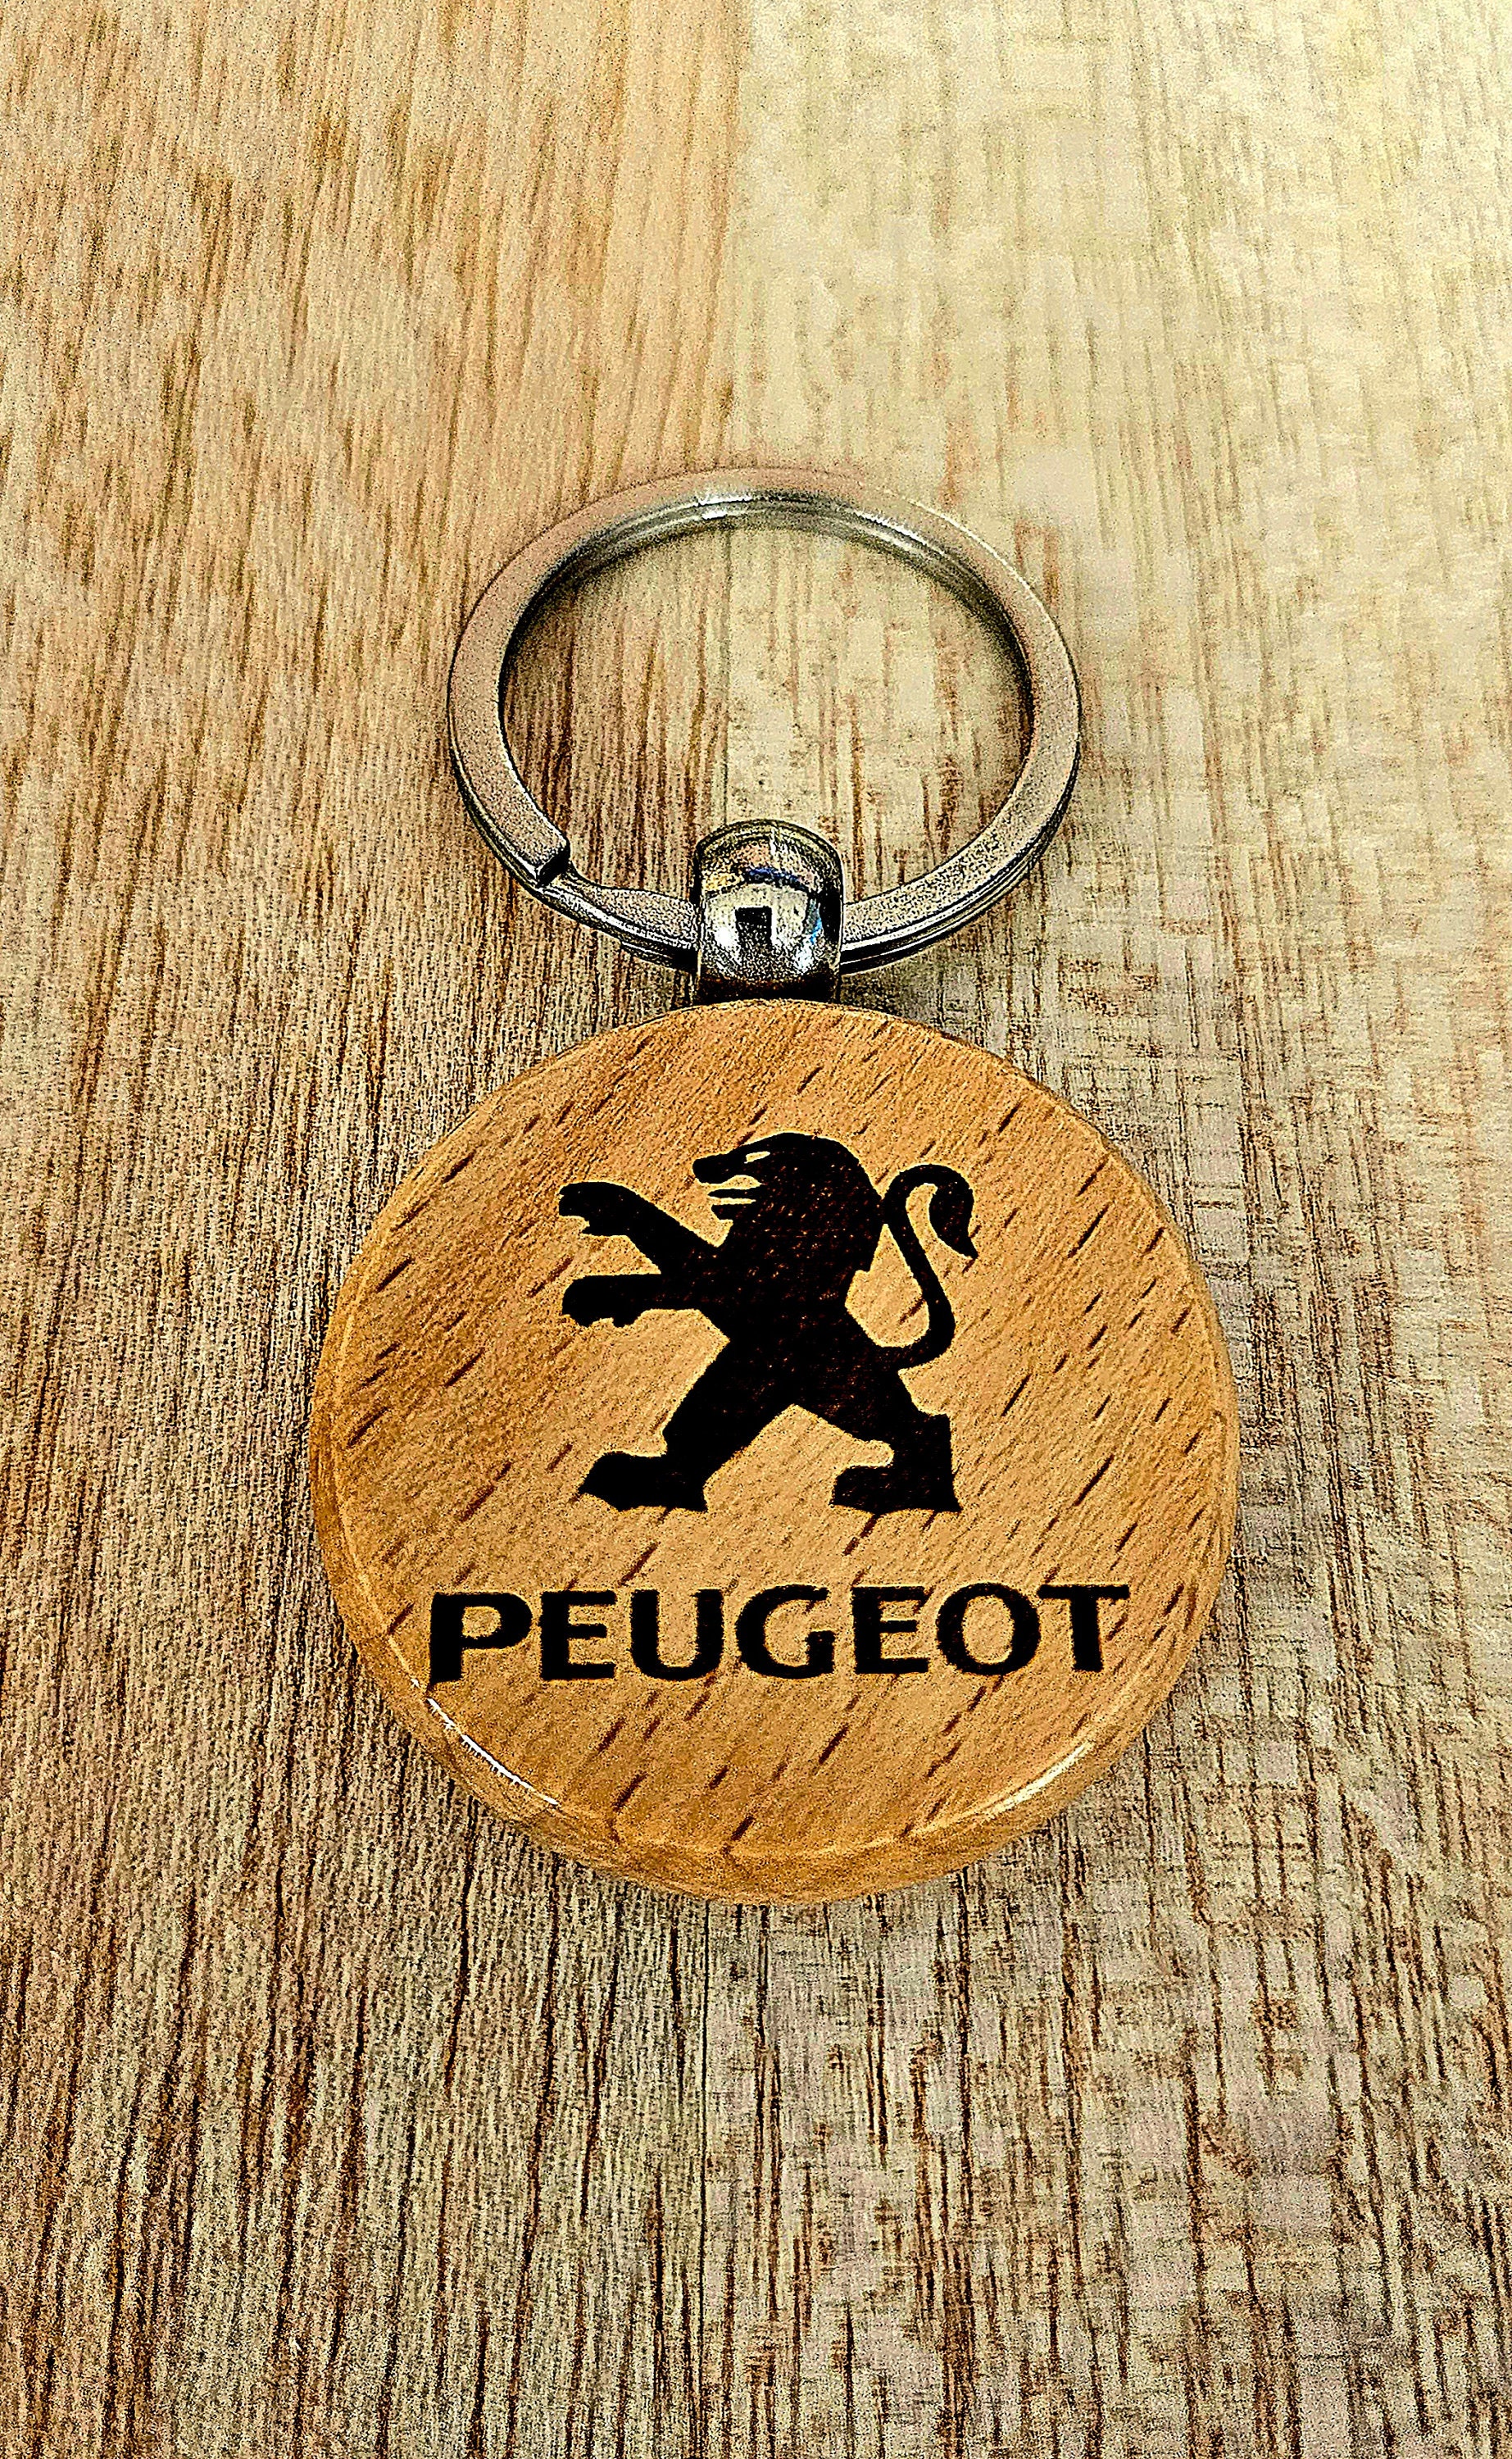 Porte clés Peugeot Sport GTi - Pro-RS